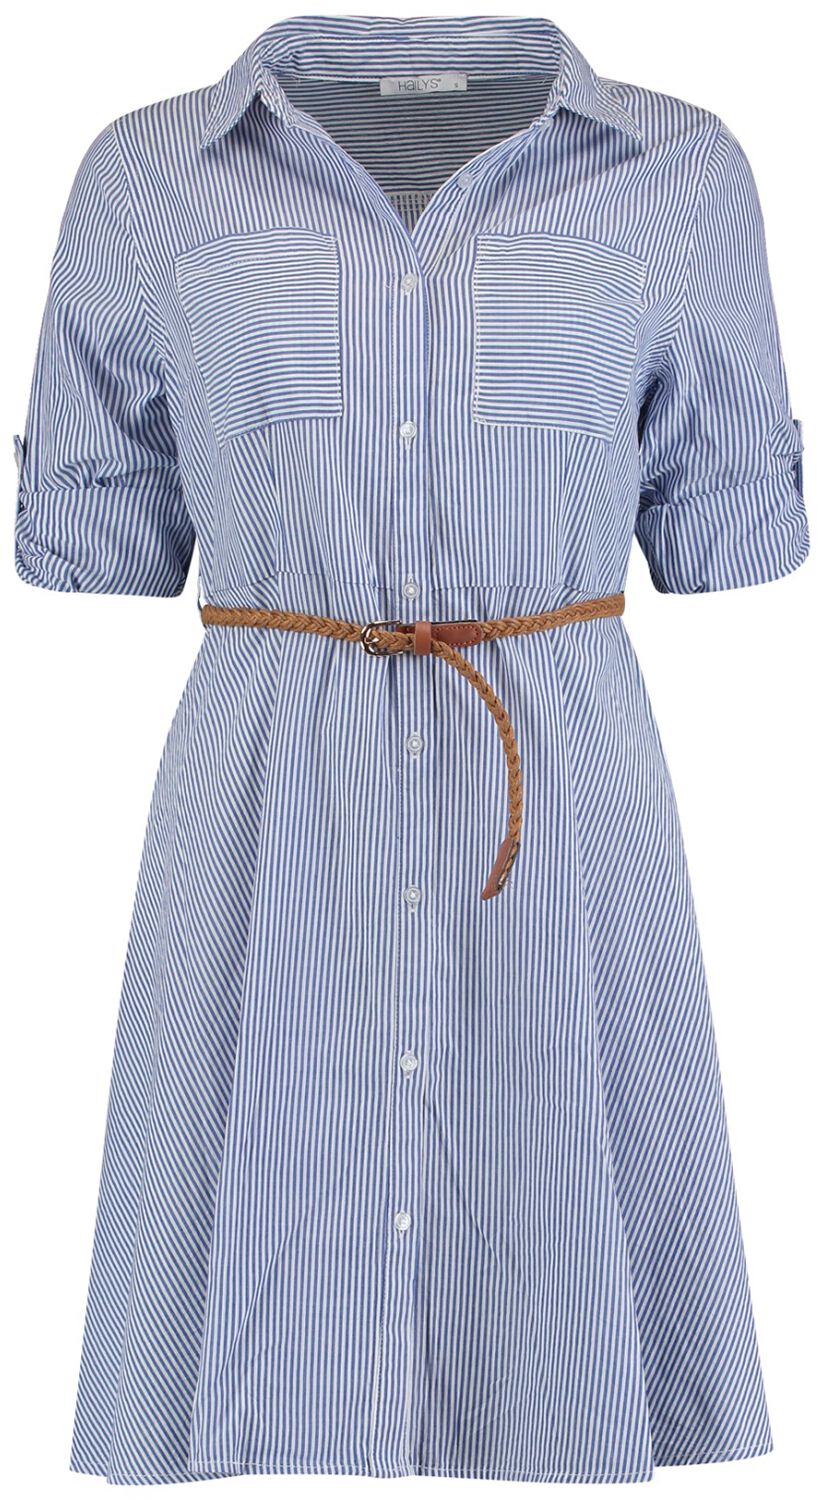 Robe courte de Hailys - Clea - XS à XXL - pour Femme - bleu/blanc